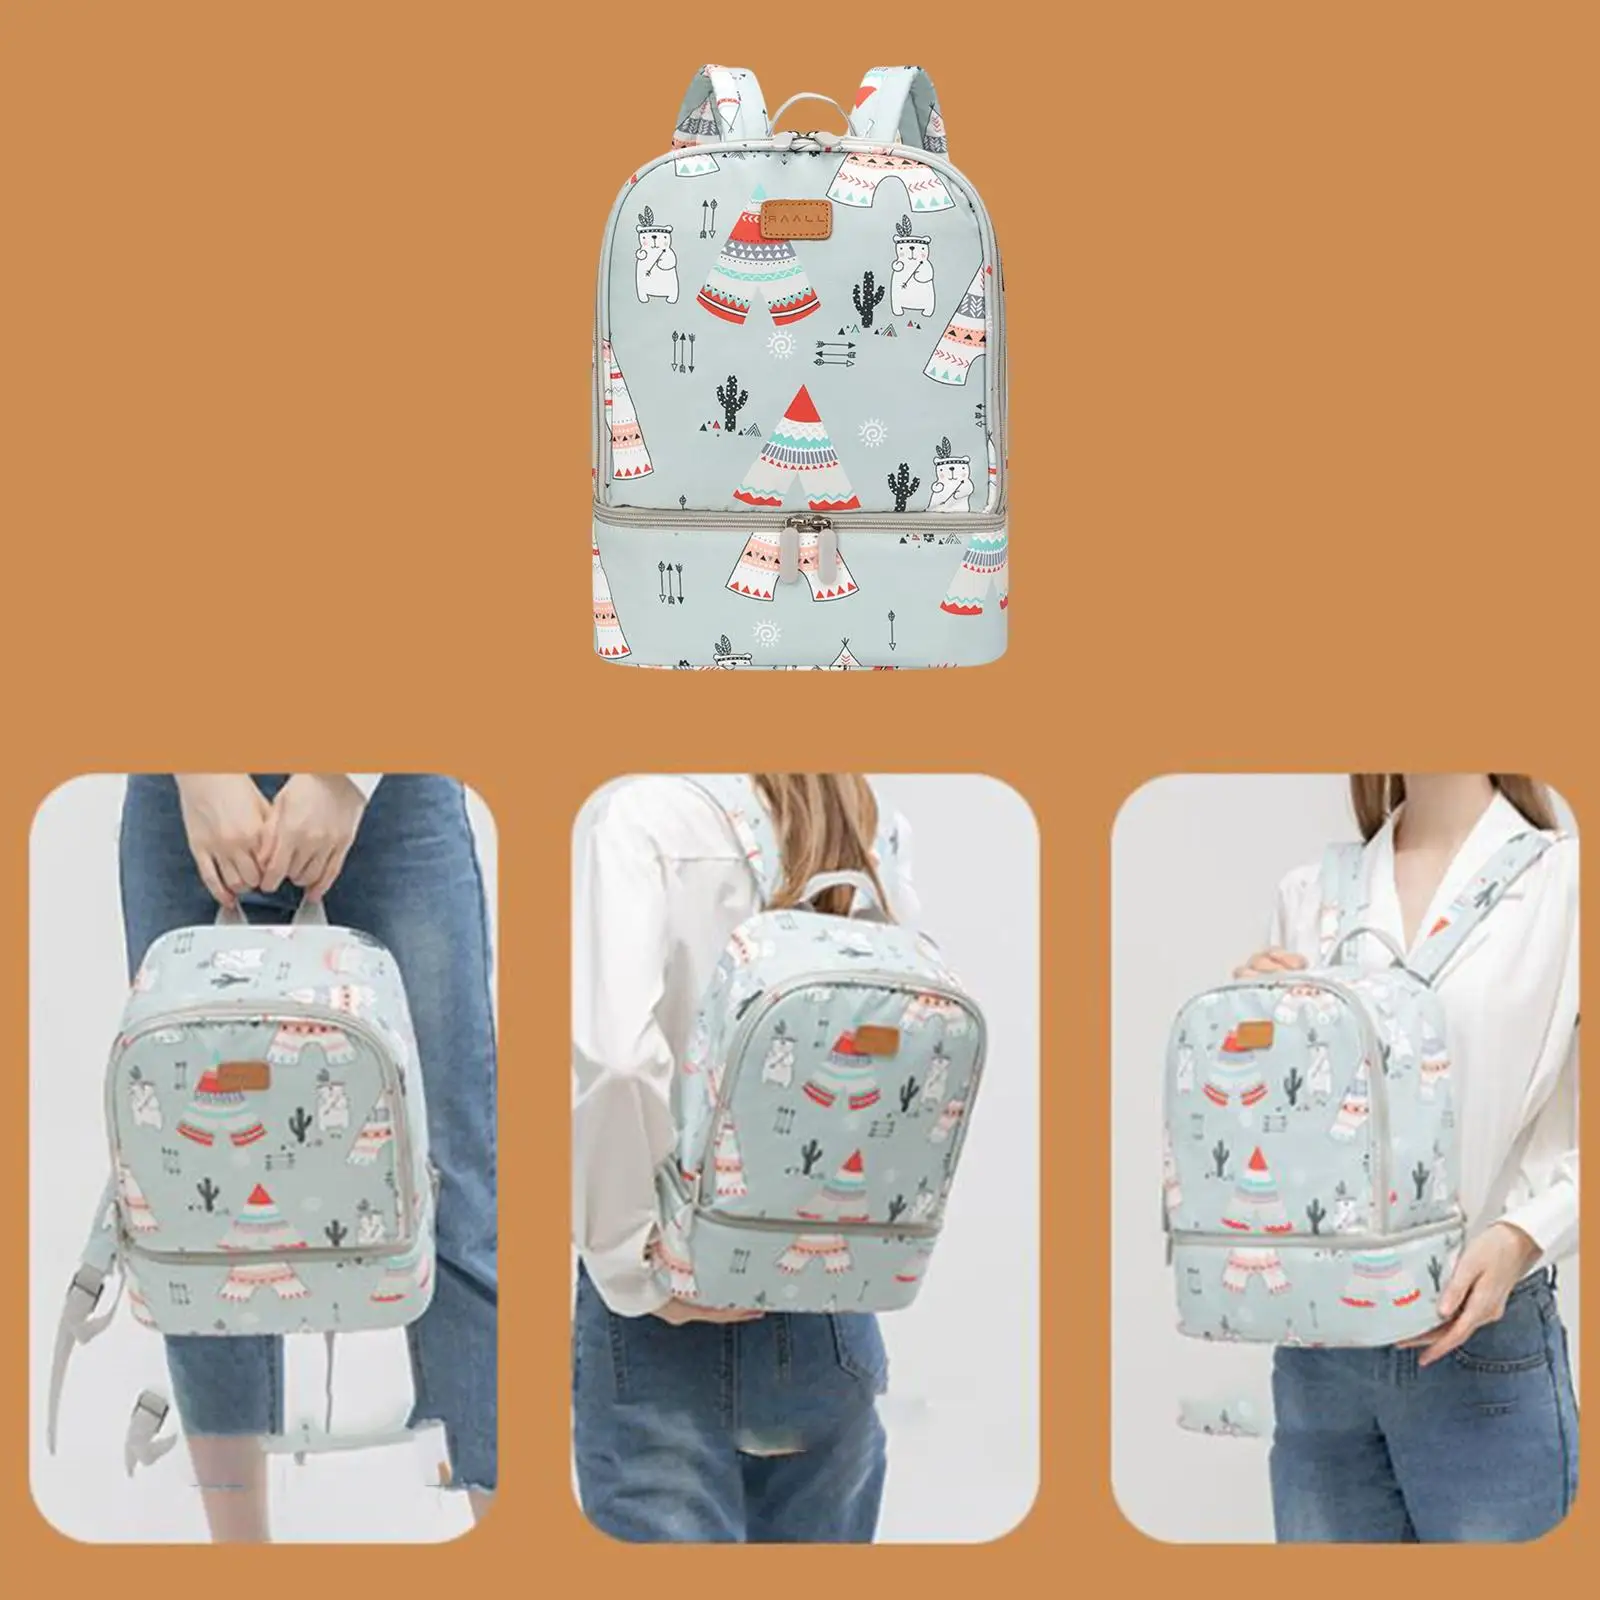 Portable Diaper Bag Bottle Storage Bag Handbag Cooler Bag Travel Backpack